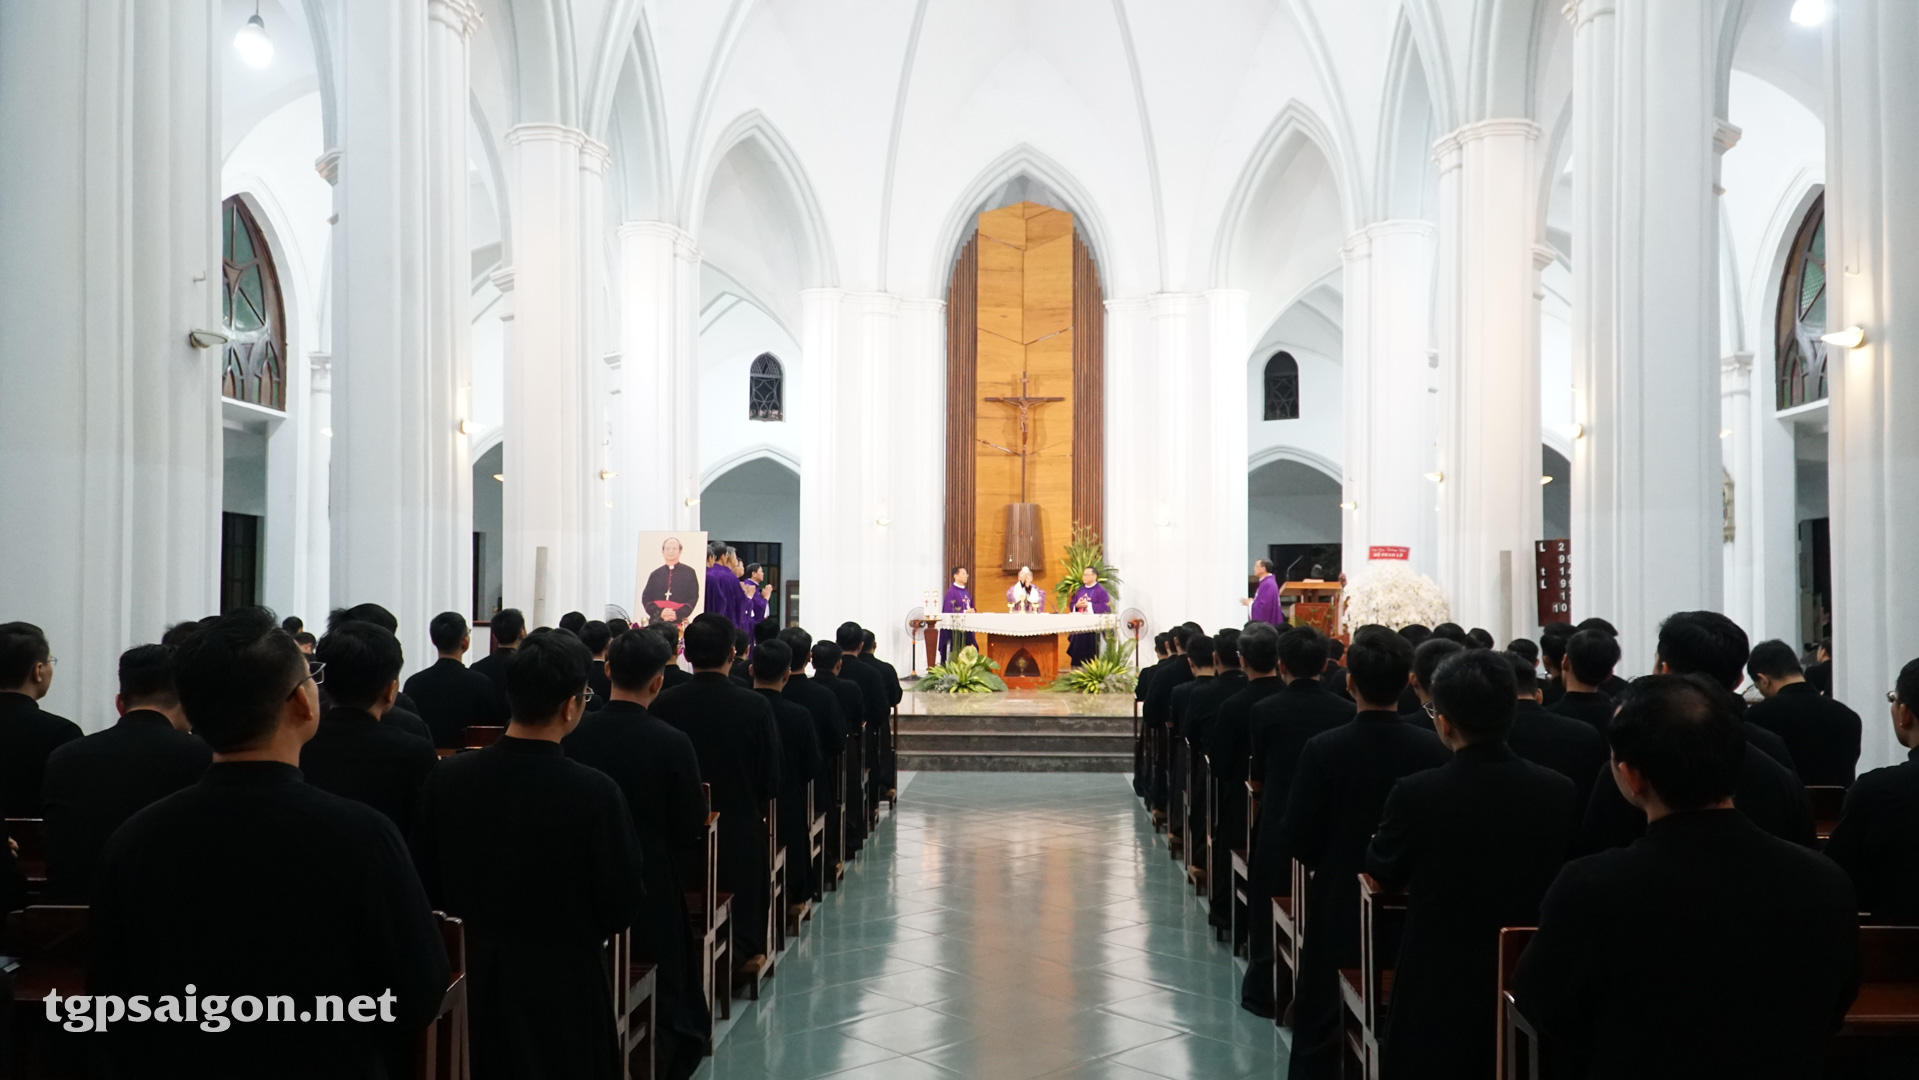 ĐCV Thánh Giuse Sài Gòn: Thánh lễ giỗ 5 năm Đức cố Tổng Giám mục Phaolô Bùi Văn Đọc và cầu nguyện cho quý Đức cha, quý cha Bề trên và quý cha Thừa sai